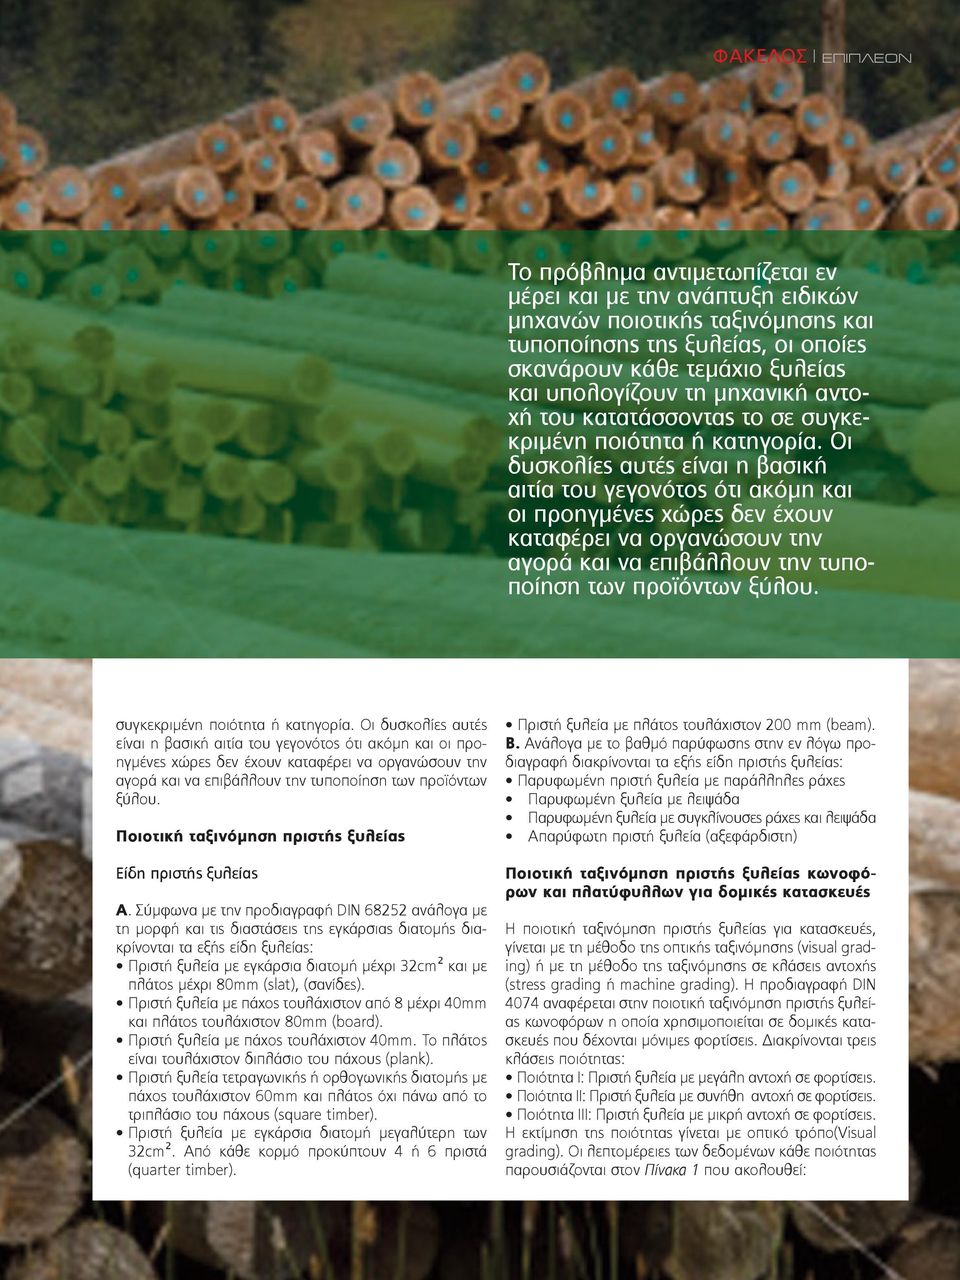 Οι δυσκολίες αυτές είναι η βασική αιτία του γεγονότος ότι ακόμη και οι προηγμένες χώρες δεν έχουν καταφέρει να οργανώσουν την αγορά και να επιβάλλουν την τυποποίηση των προϊόντων ξύλου.